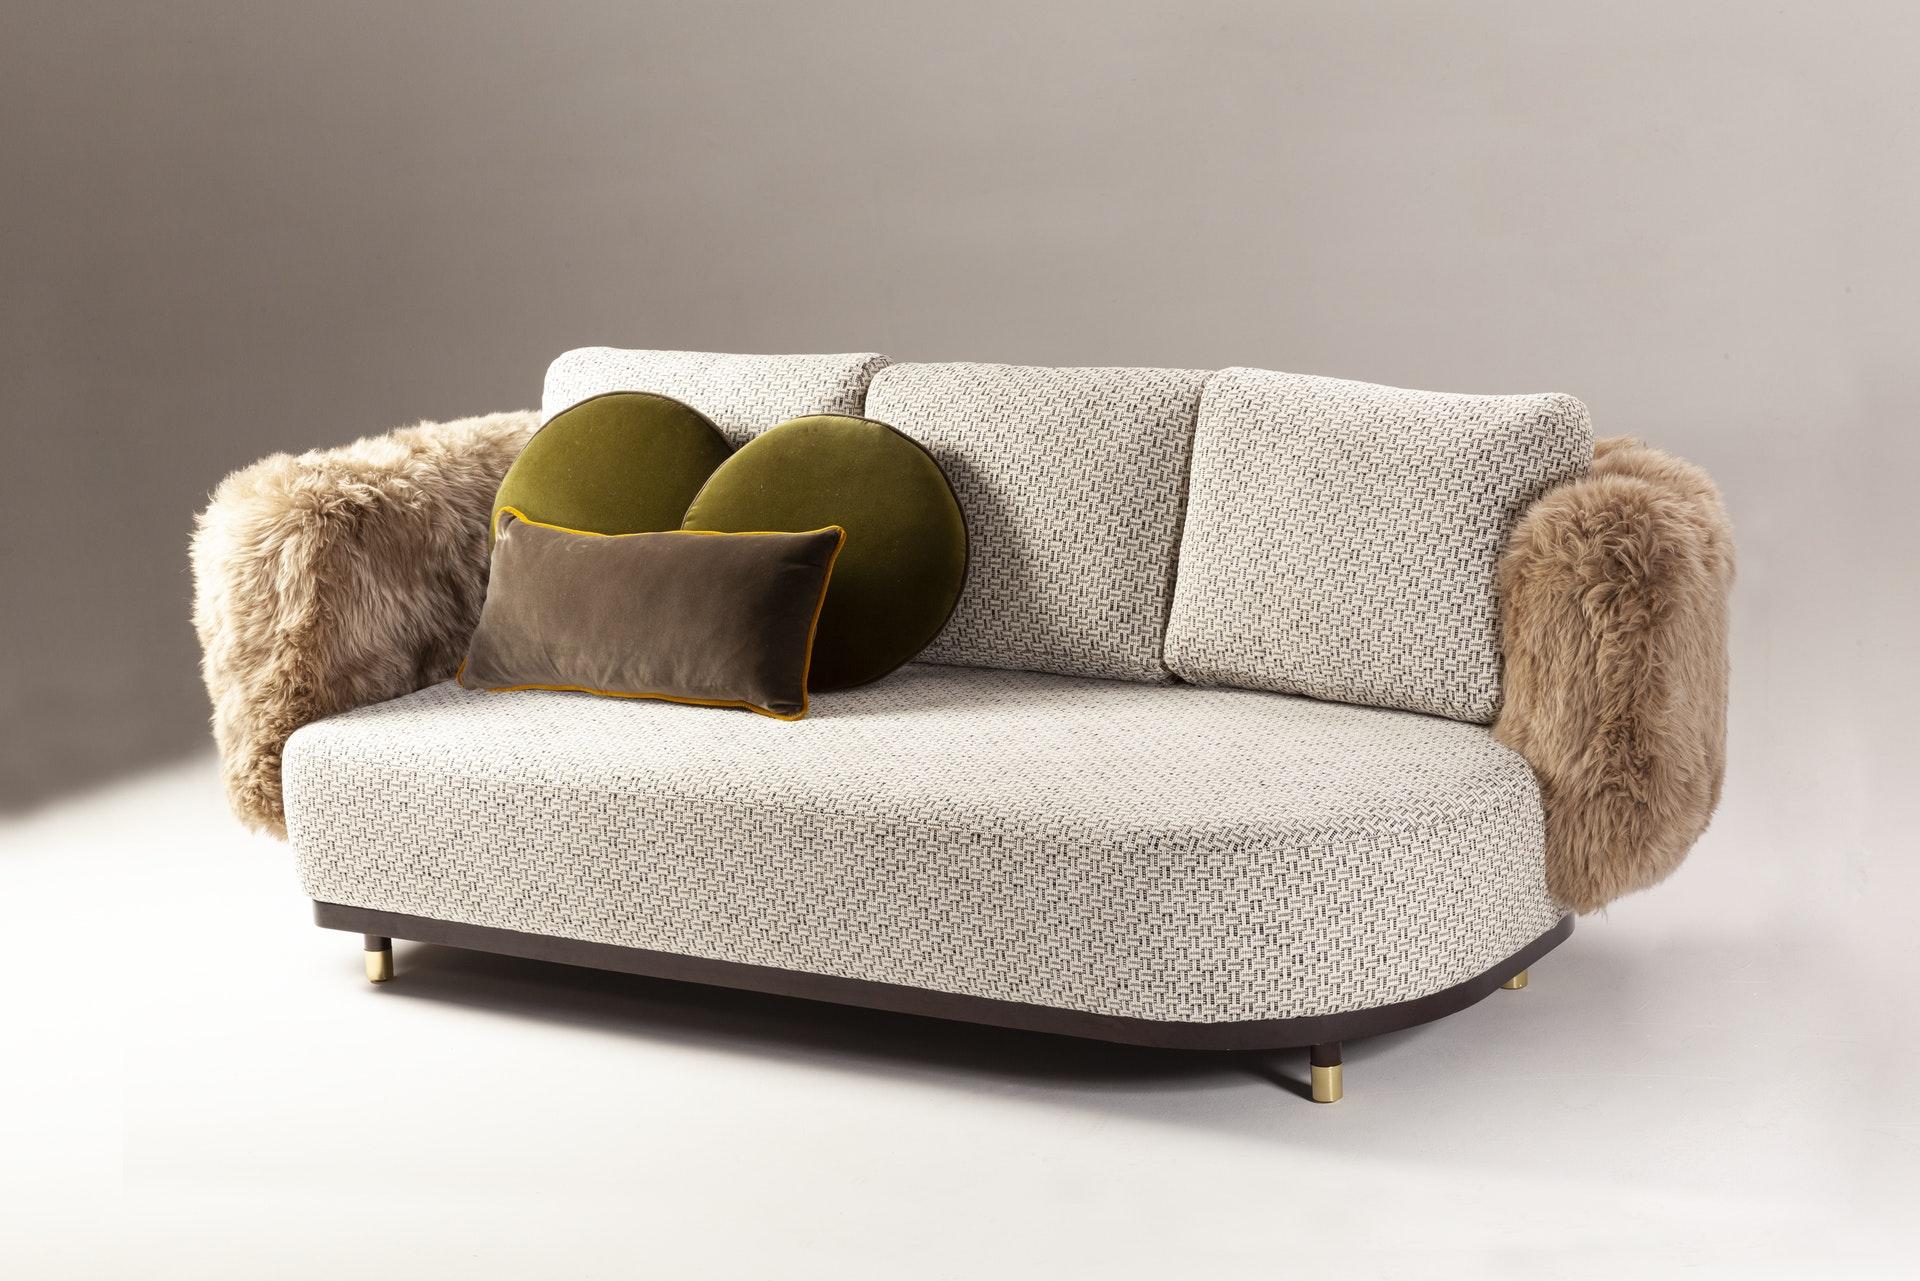 Couch für einen Mann 200 von Dooq
Maße: B 200 / 240 / 280 x T 105 x H 83 cm
MATERIALIEN: Polsterung und Keder aus Stoff oder Leder, Fransen.

DOOQ ist ein Designunternehmen, das den Luxus des Wohnens zelebriert. Wir entwerfen Designs, die die Sinne